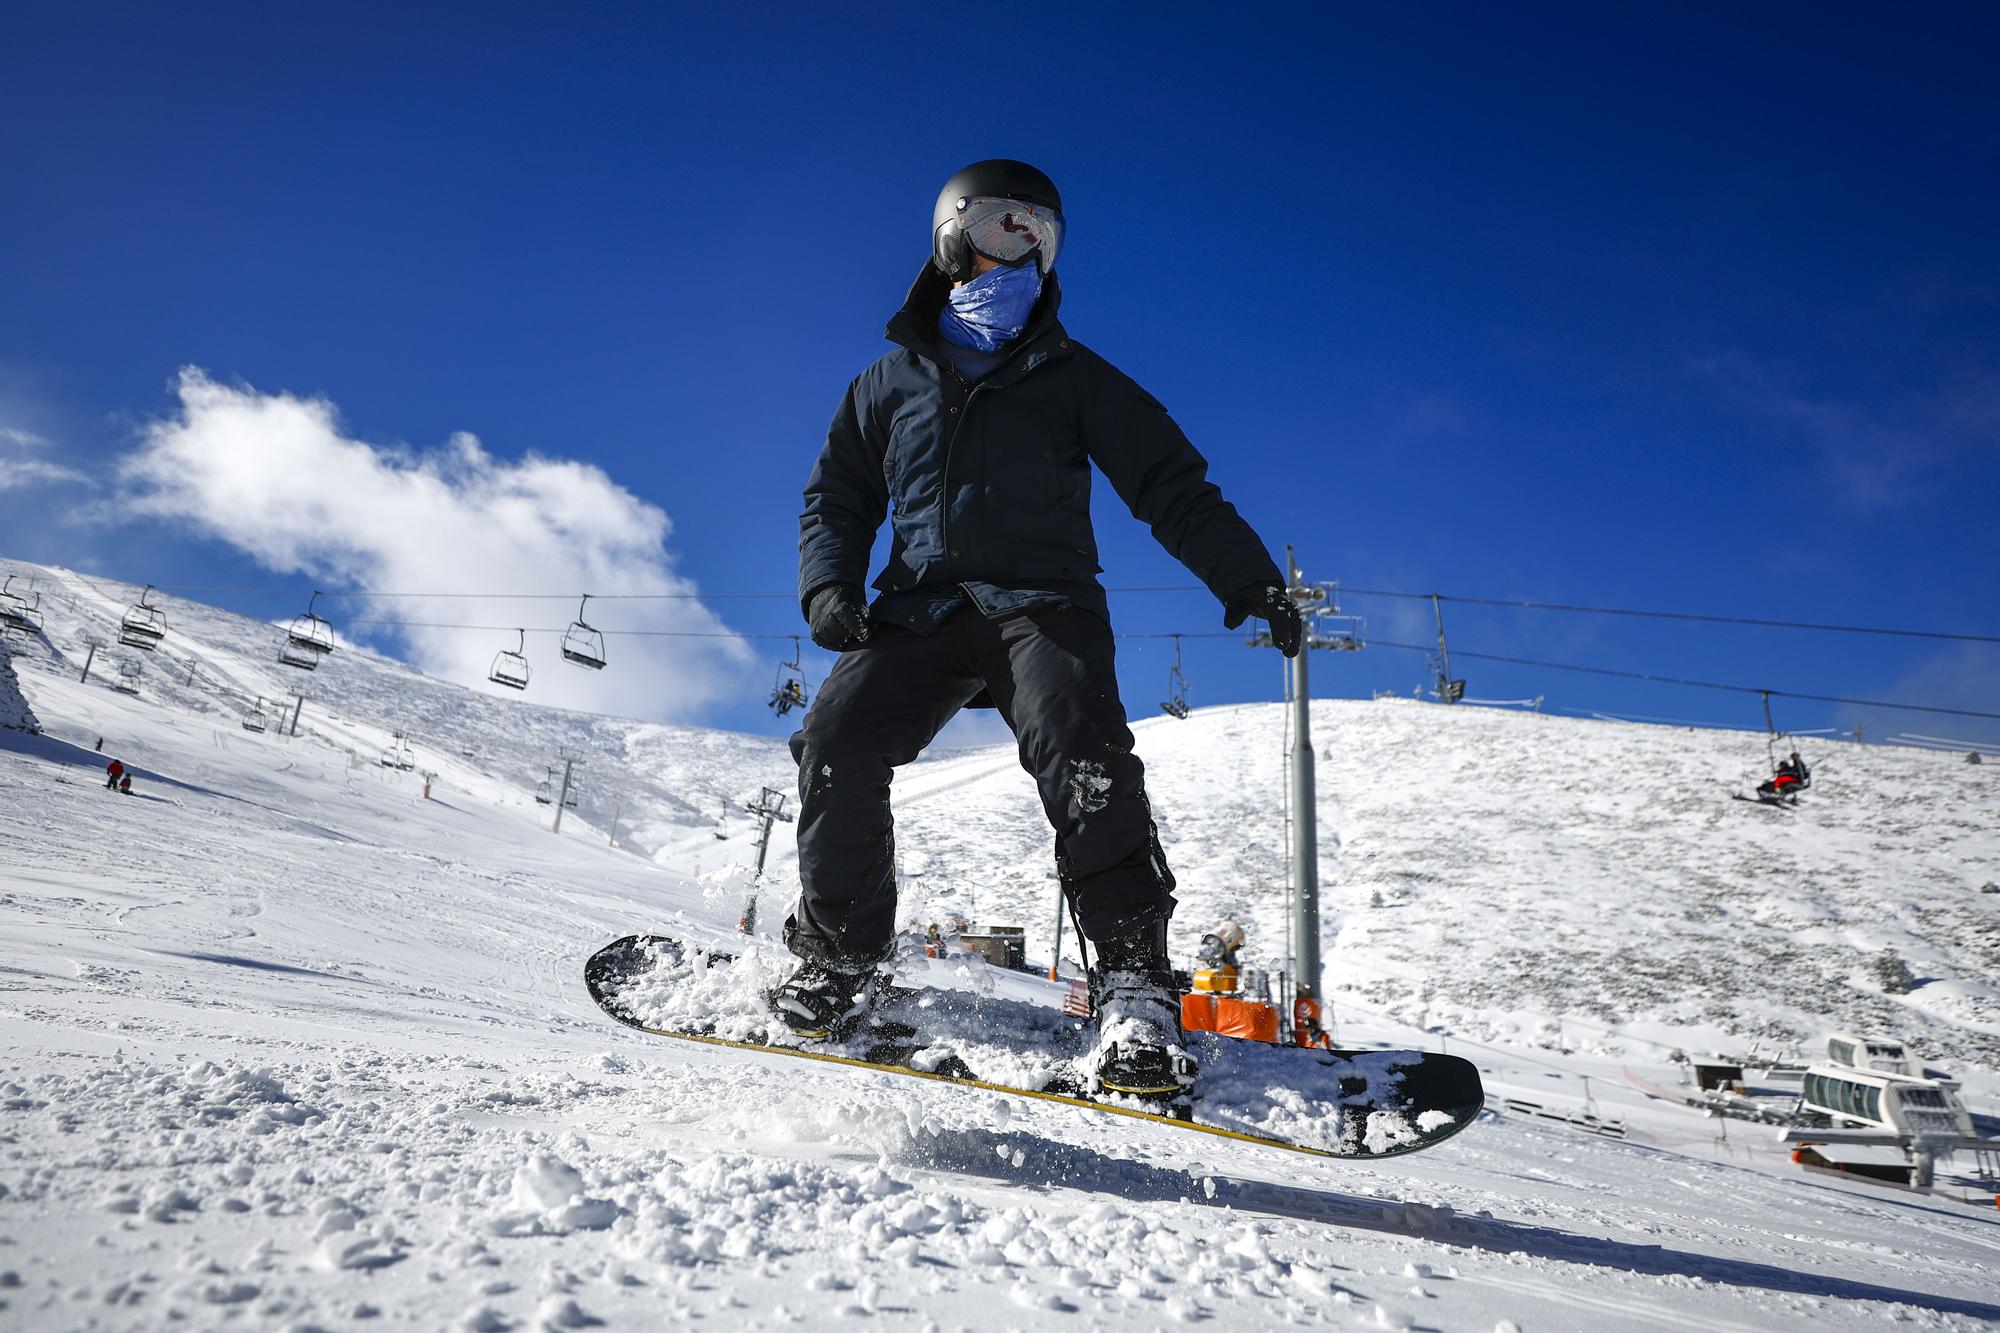 Gafas de esquí, cómo proteger los ojos para esquiar